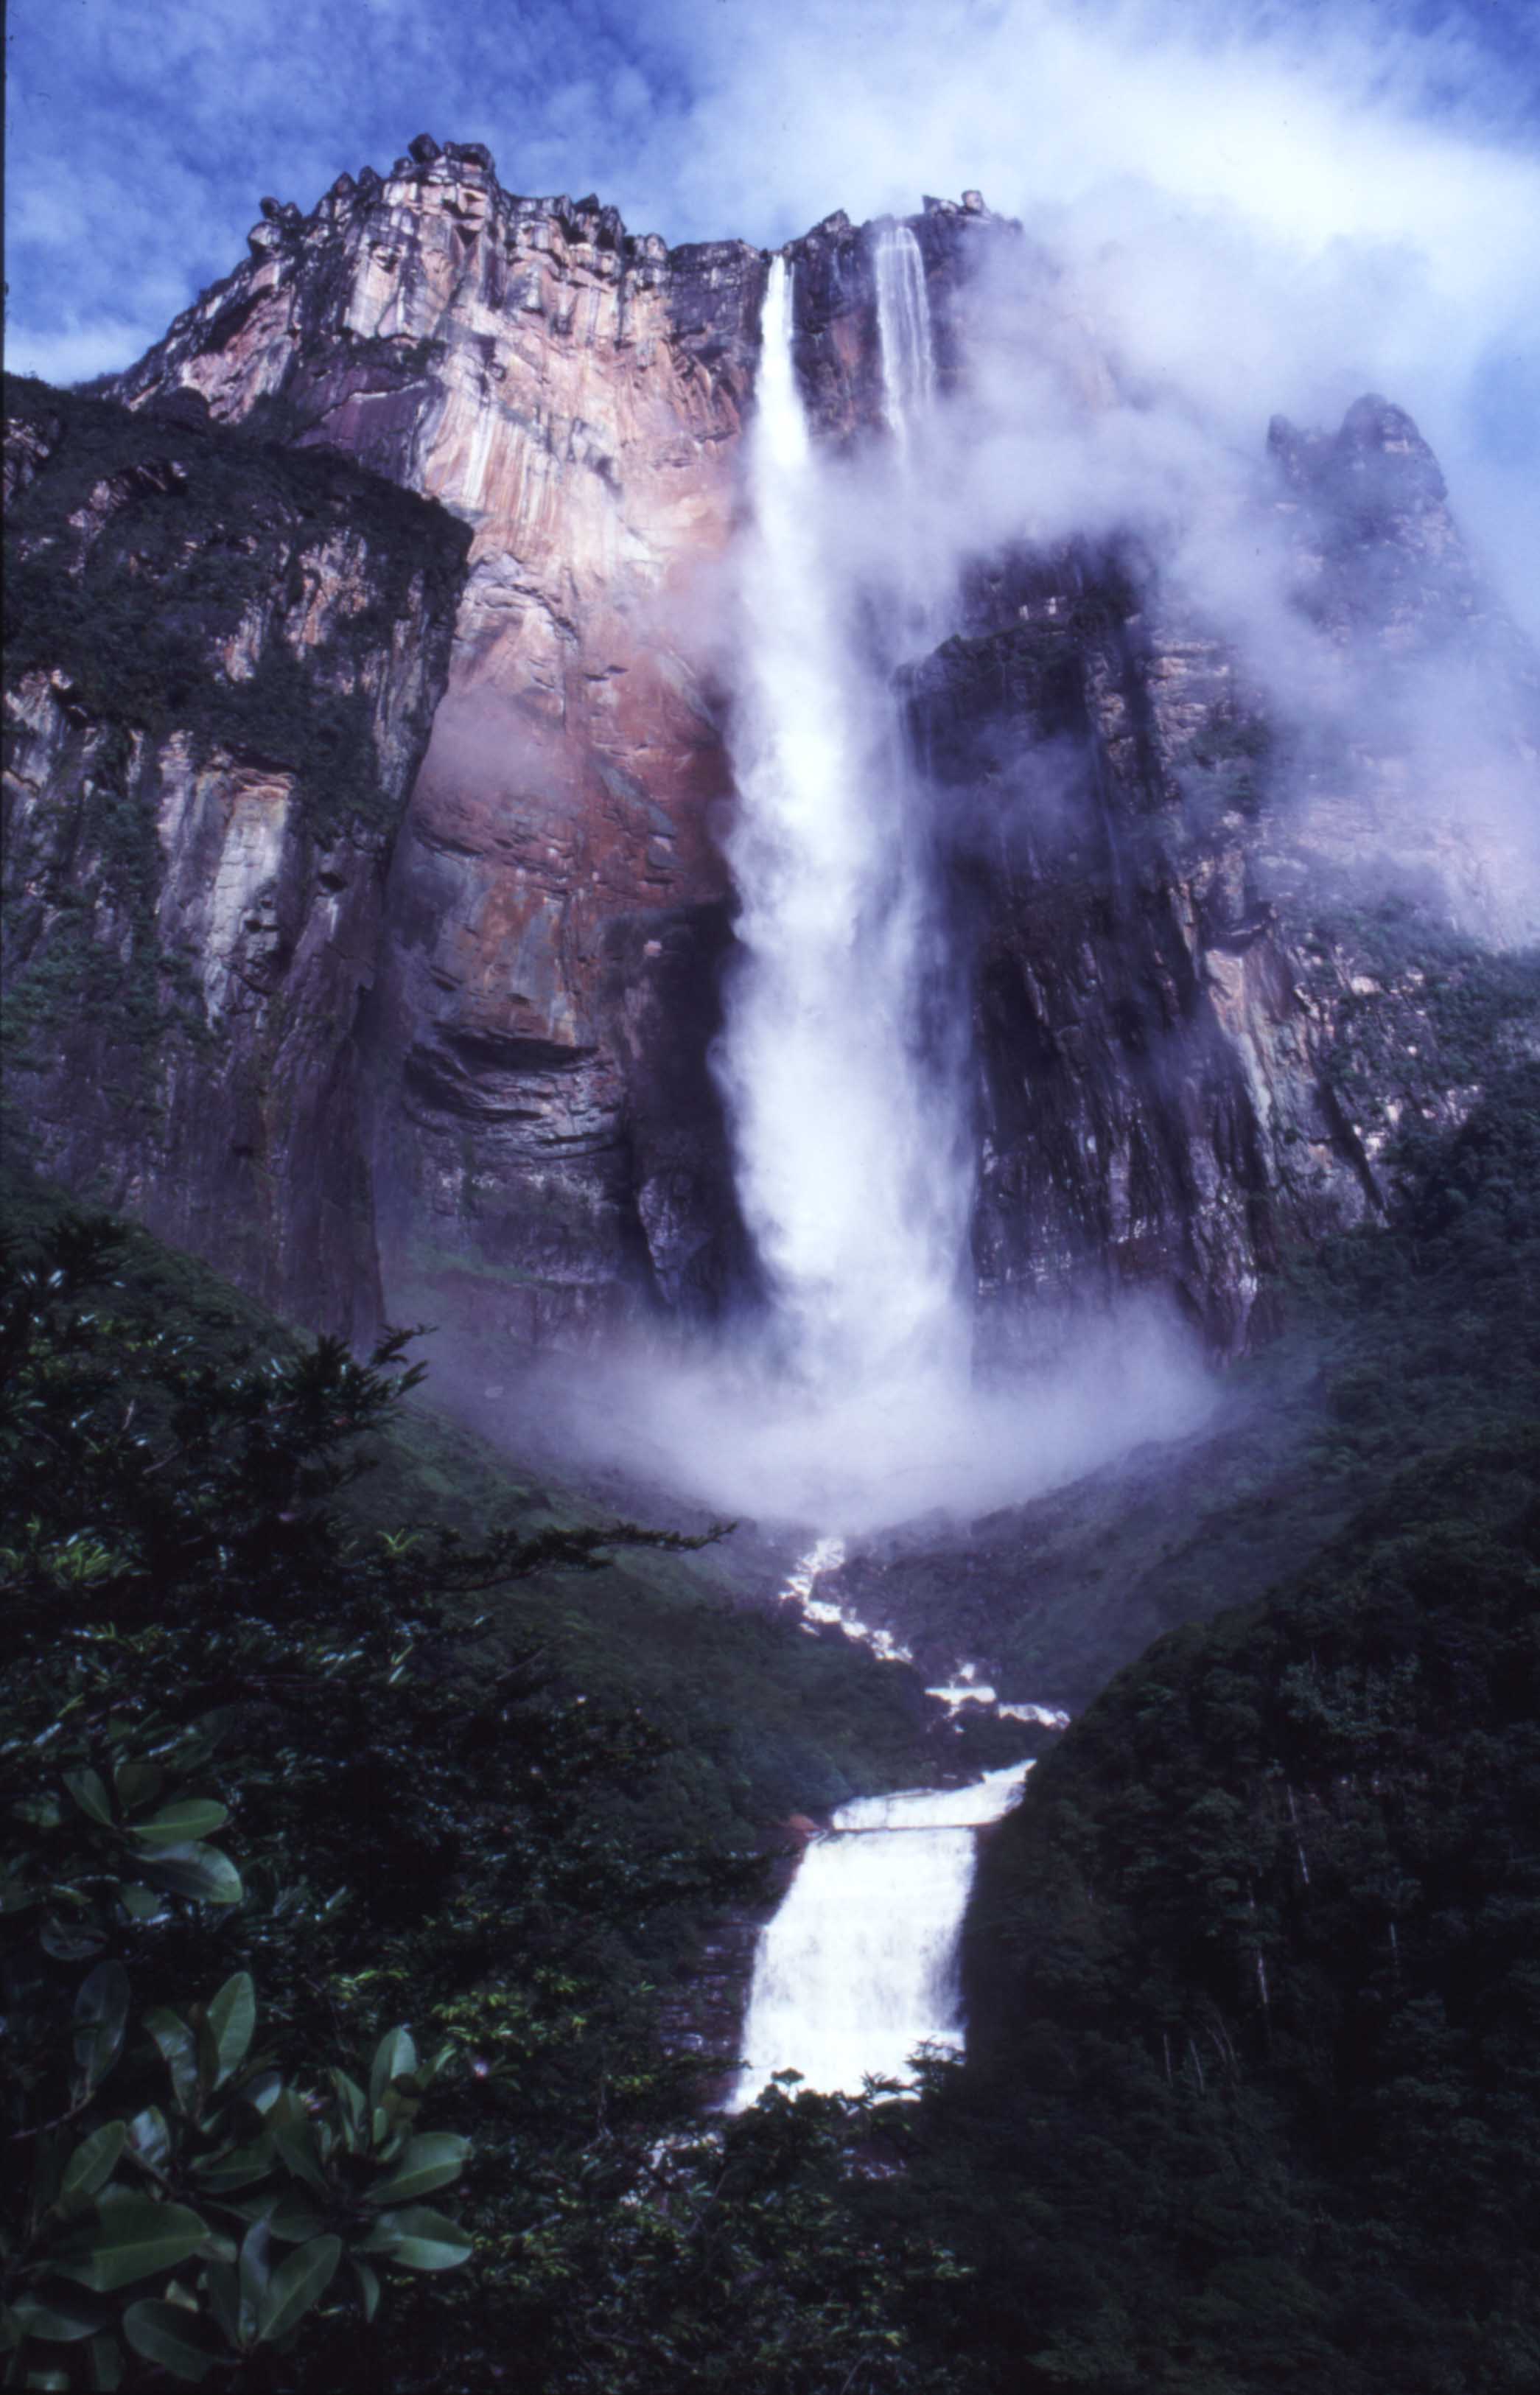 엔젤 폭포 앙헬폭포 Angel Falls 베네수엘라 낙차 979m 세계 최고 높이 네이버 블로그